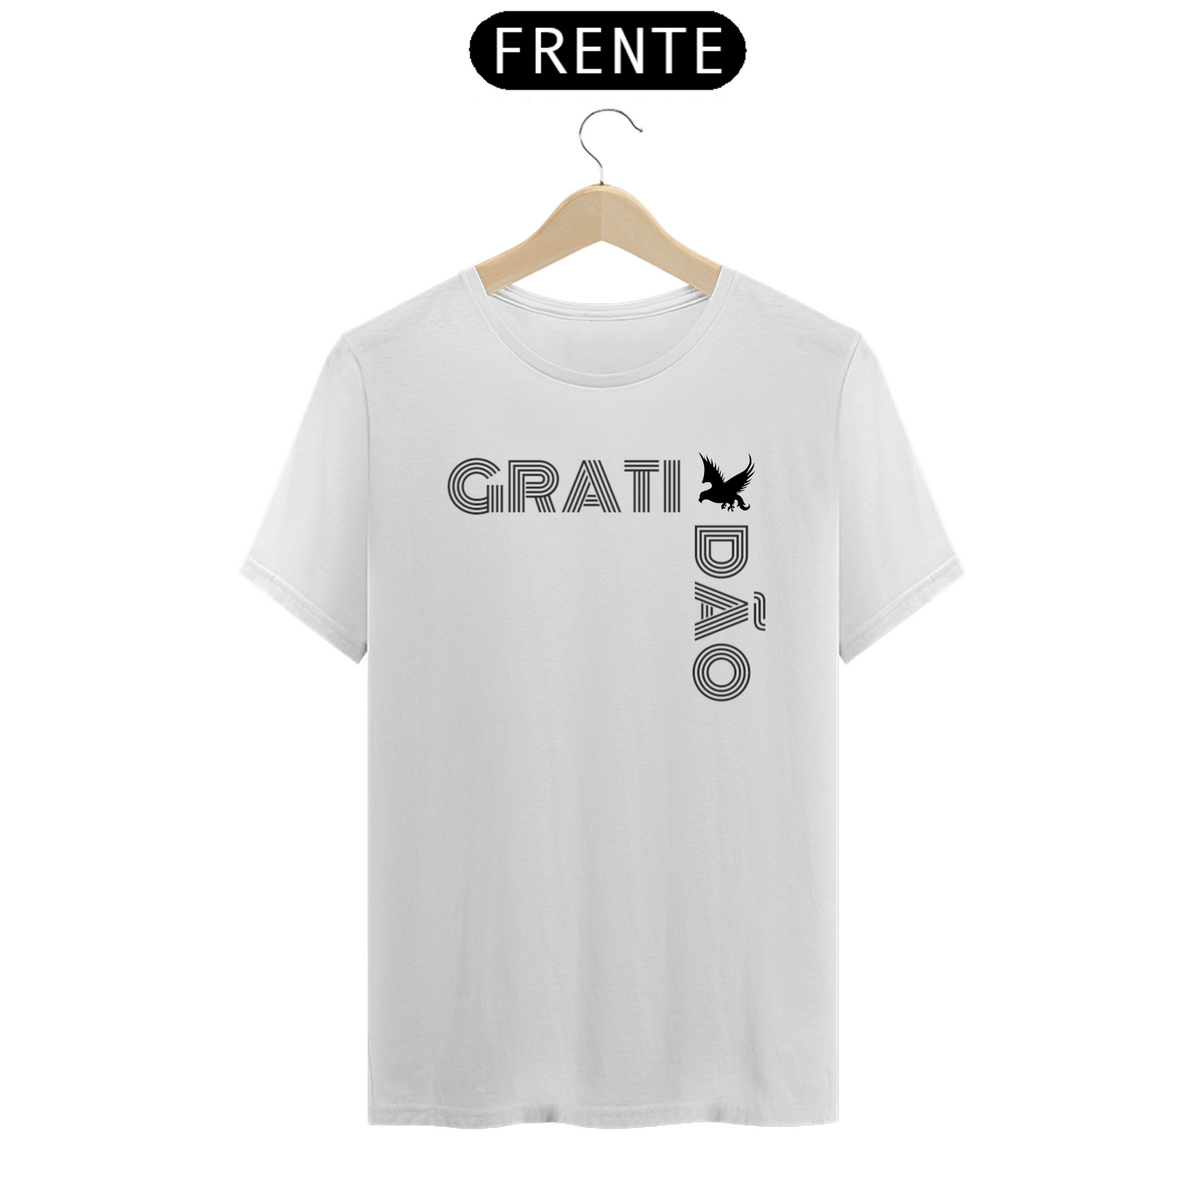 Nome do produto: Camisa unisex Gratidão